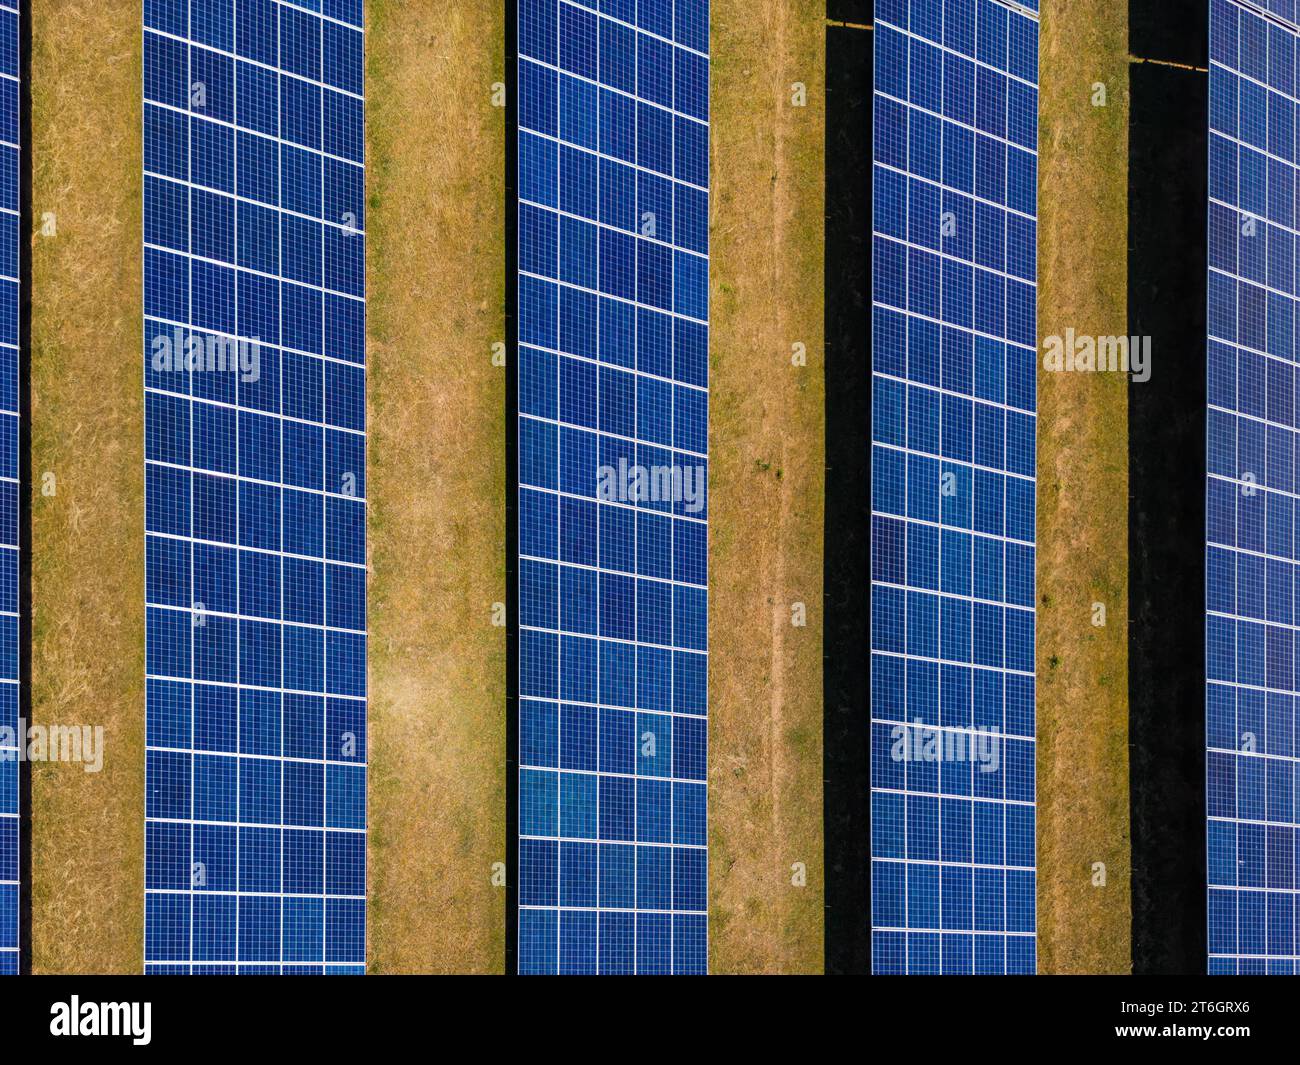 Luftaufnahme von Solarmodulen einer bodenmontierten Photovoltaikanlage auf einem Feld als Draufsicht von oben Stockfoto